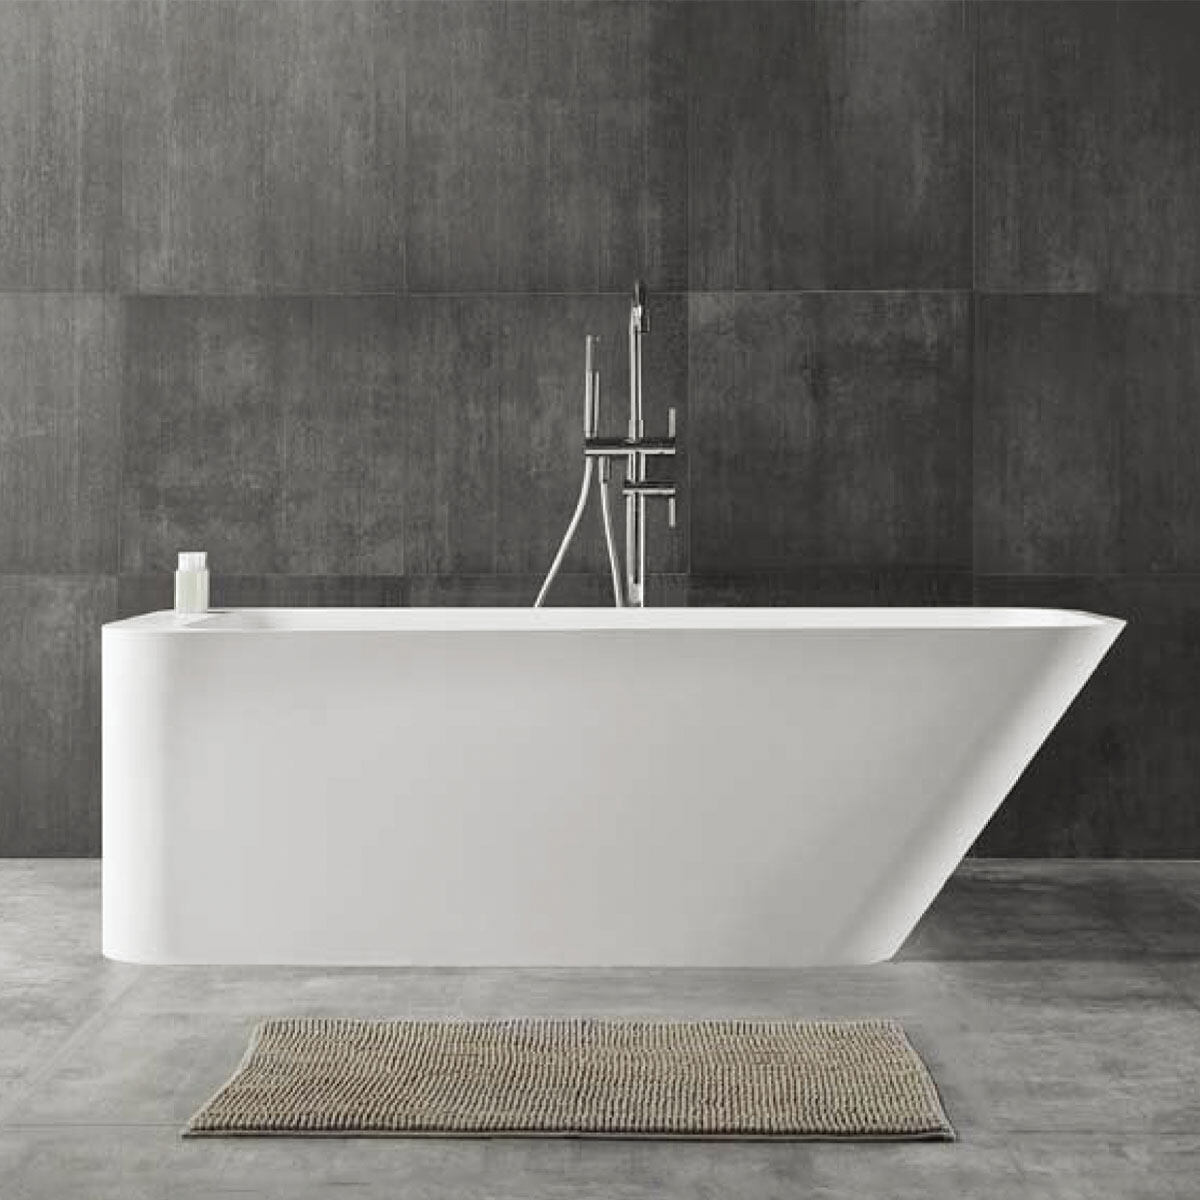 Man-Made Stone Modern Style Bathtub